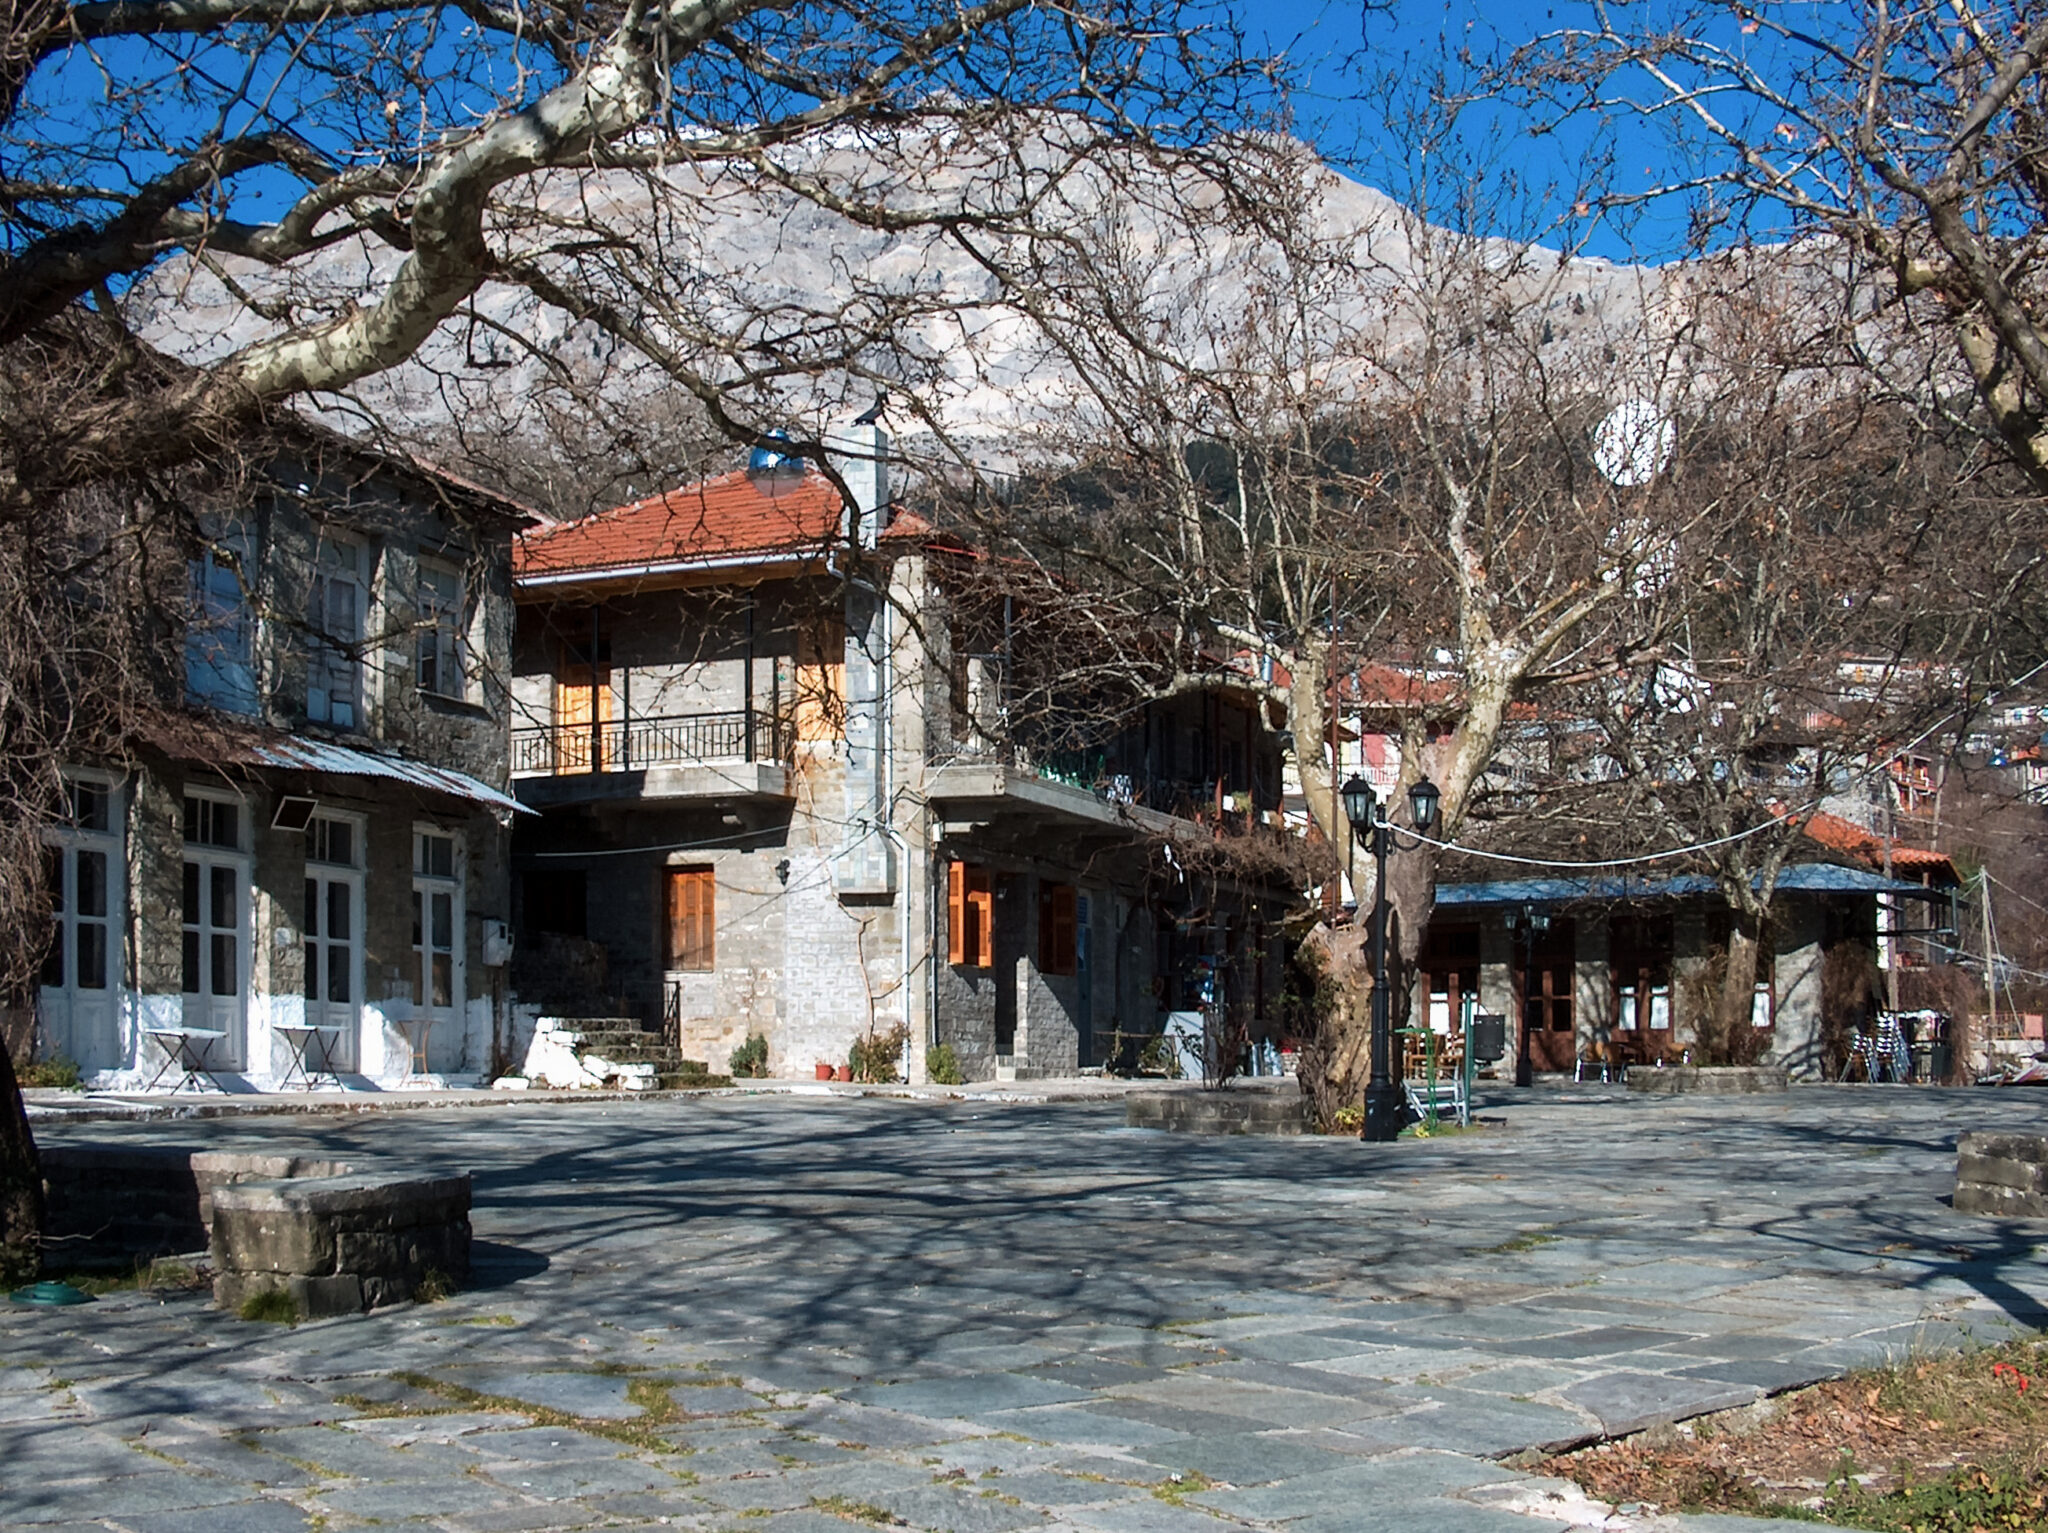 Βουργαρέλι: Το ορεινό χωριό στις παρυφές των Τζουμέρκων που εντυπωσιάζει τους επισκέπτες με την ομορφιά του